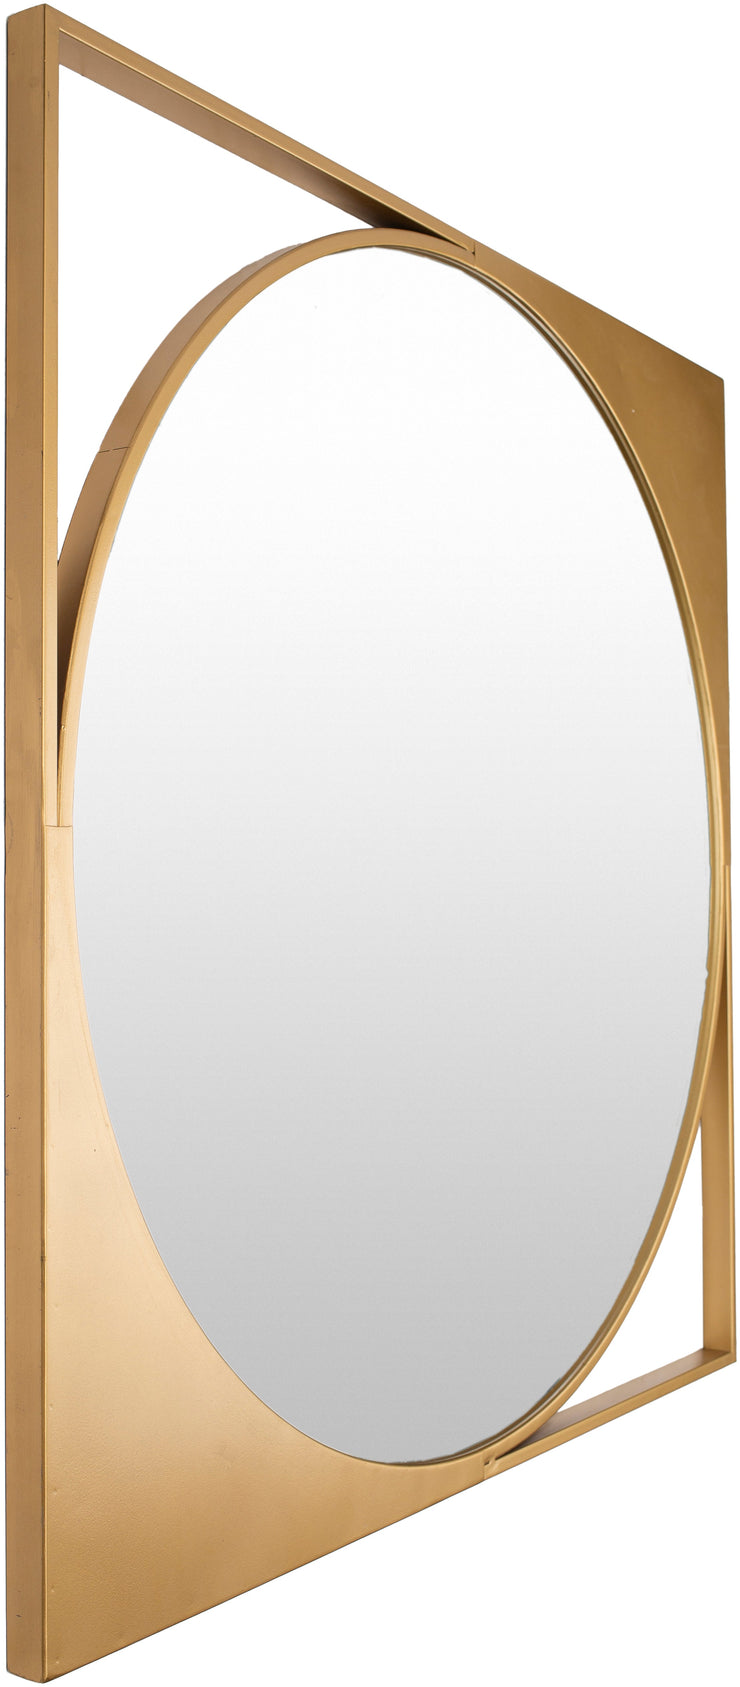 bau 002 bauhaus mirror by surya 2